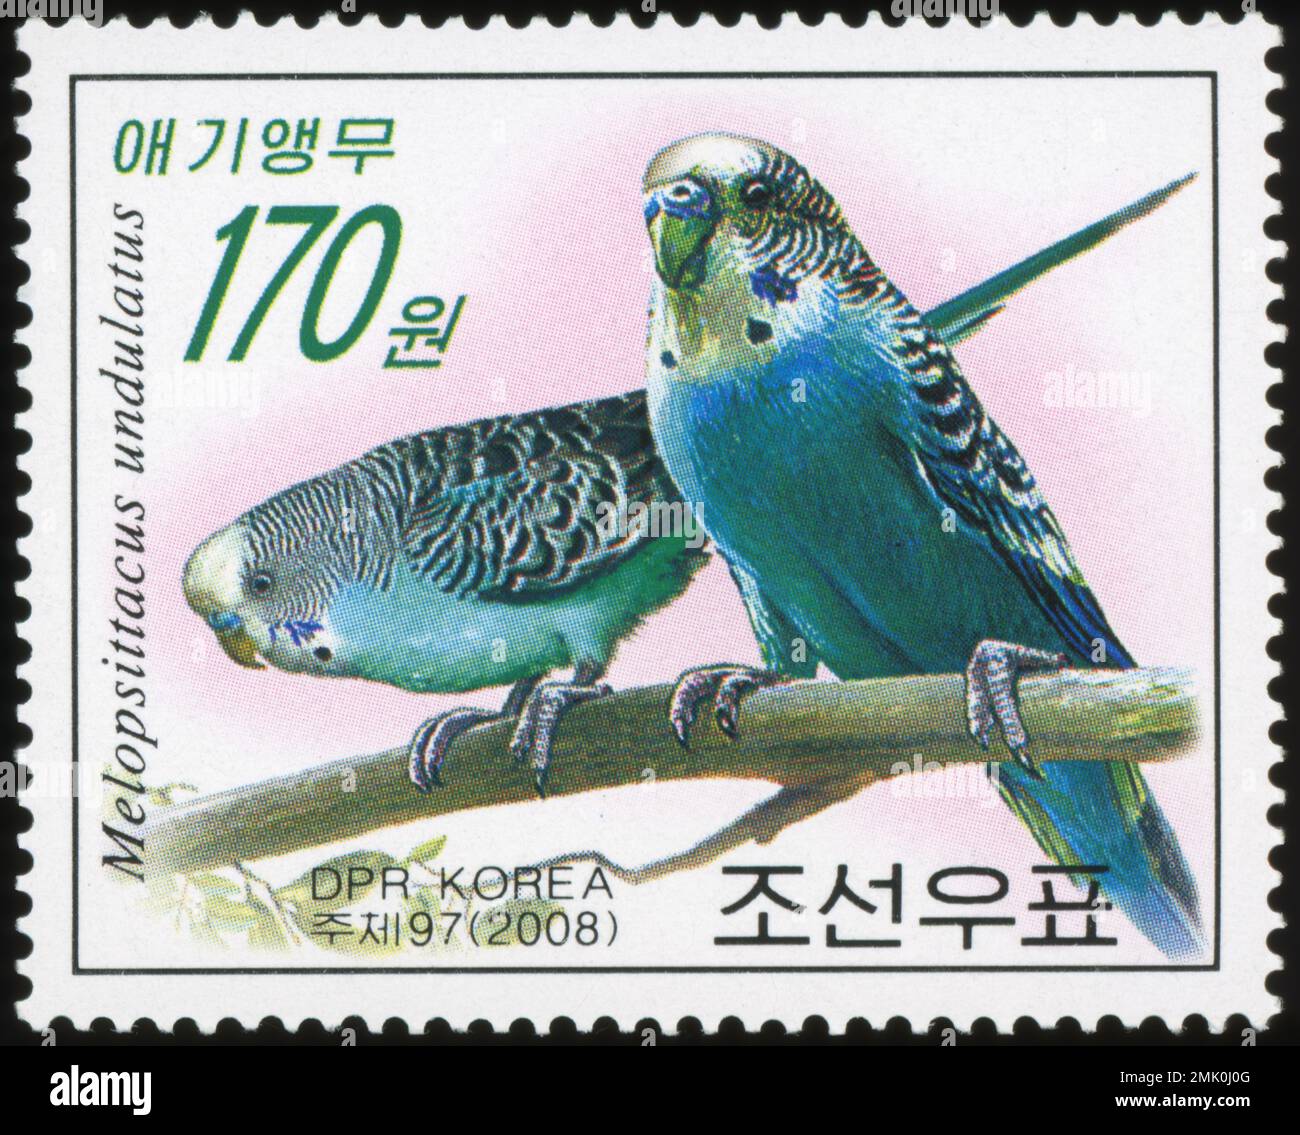 2008 Nordkorea Stempelsatz. Papageien. Melopsittacus undulatus, Wellensittich, Sittich, Walsittich, Wellensittich Stockfoto